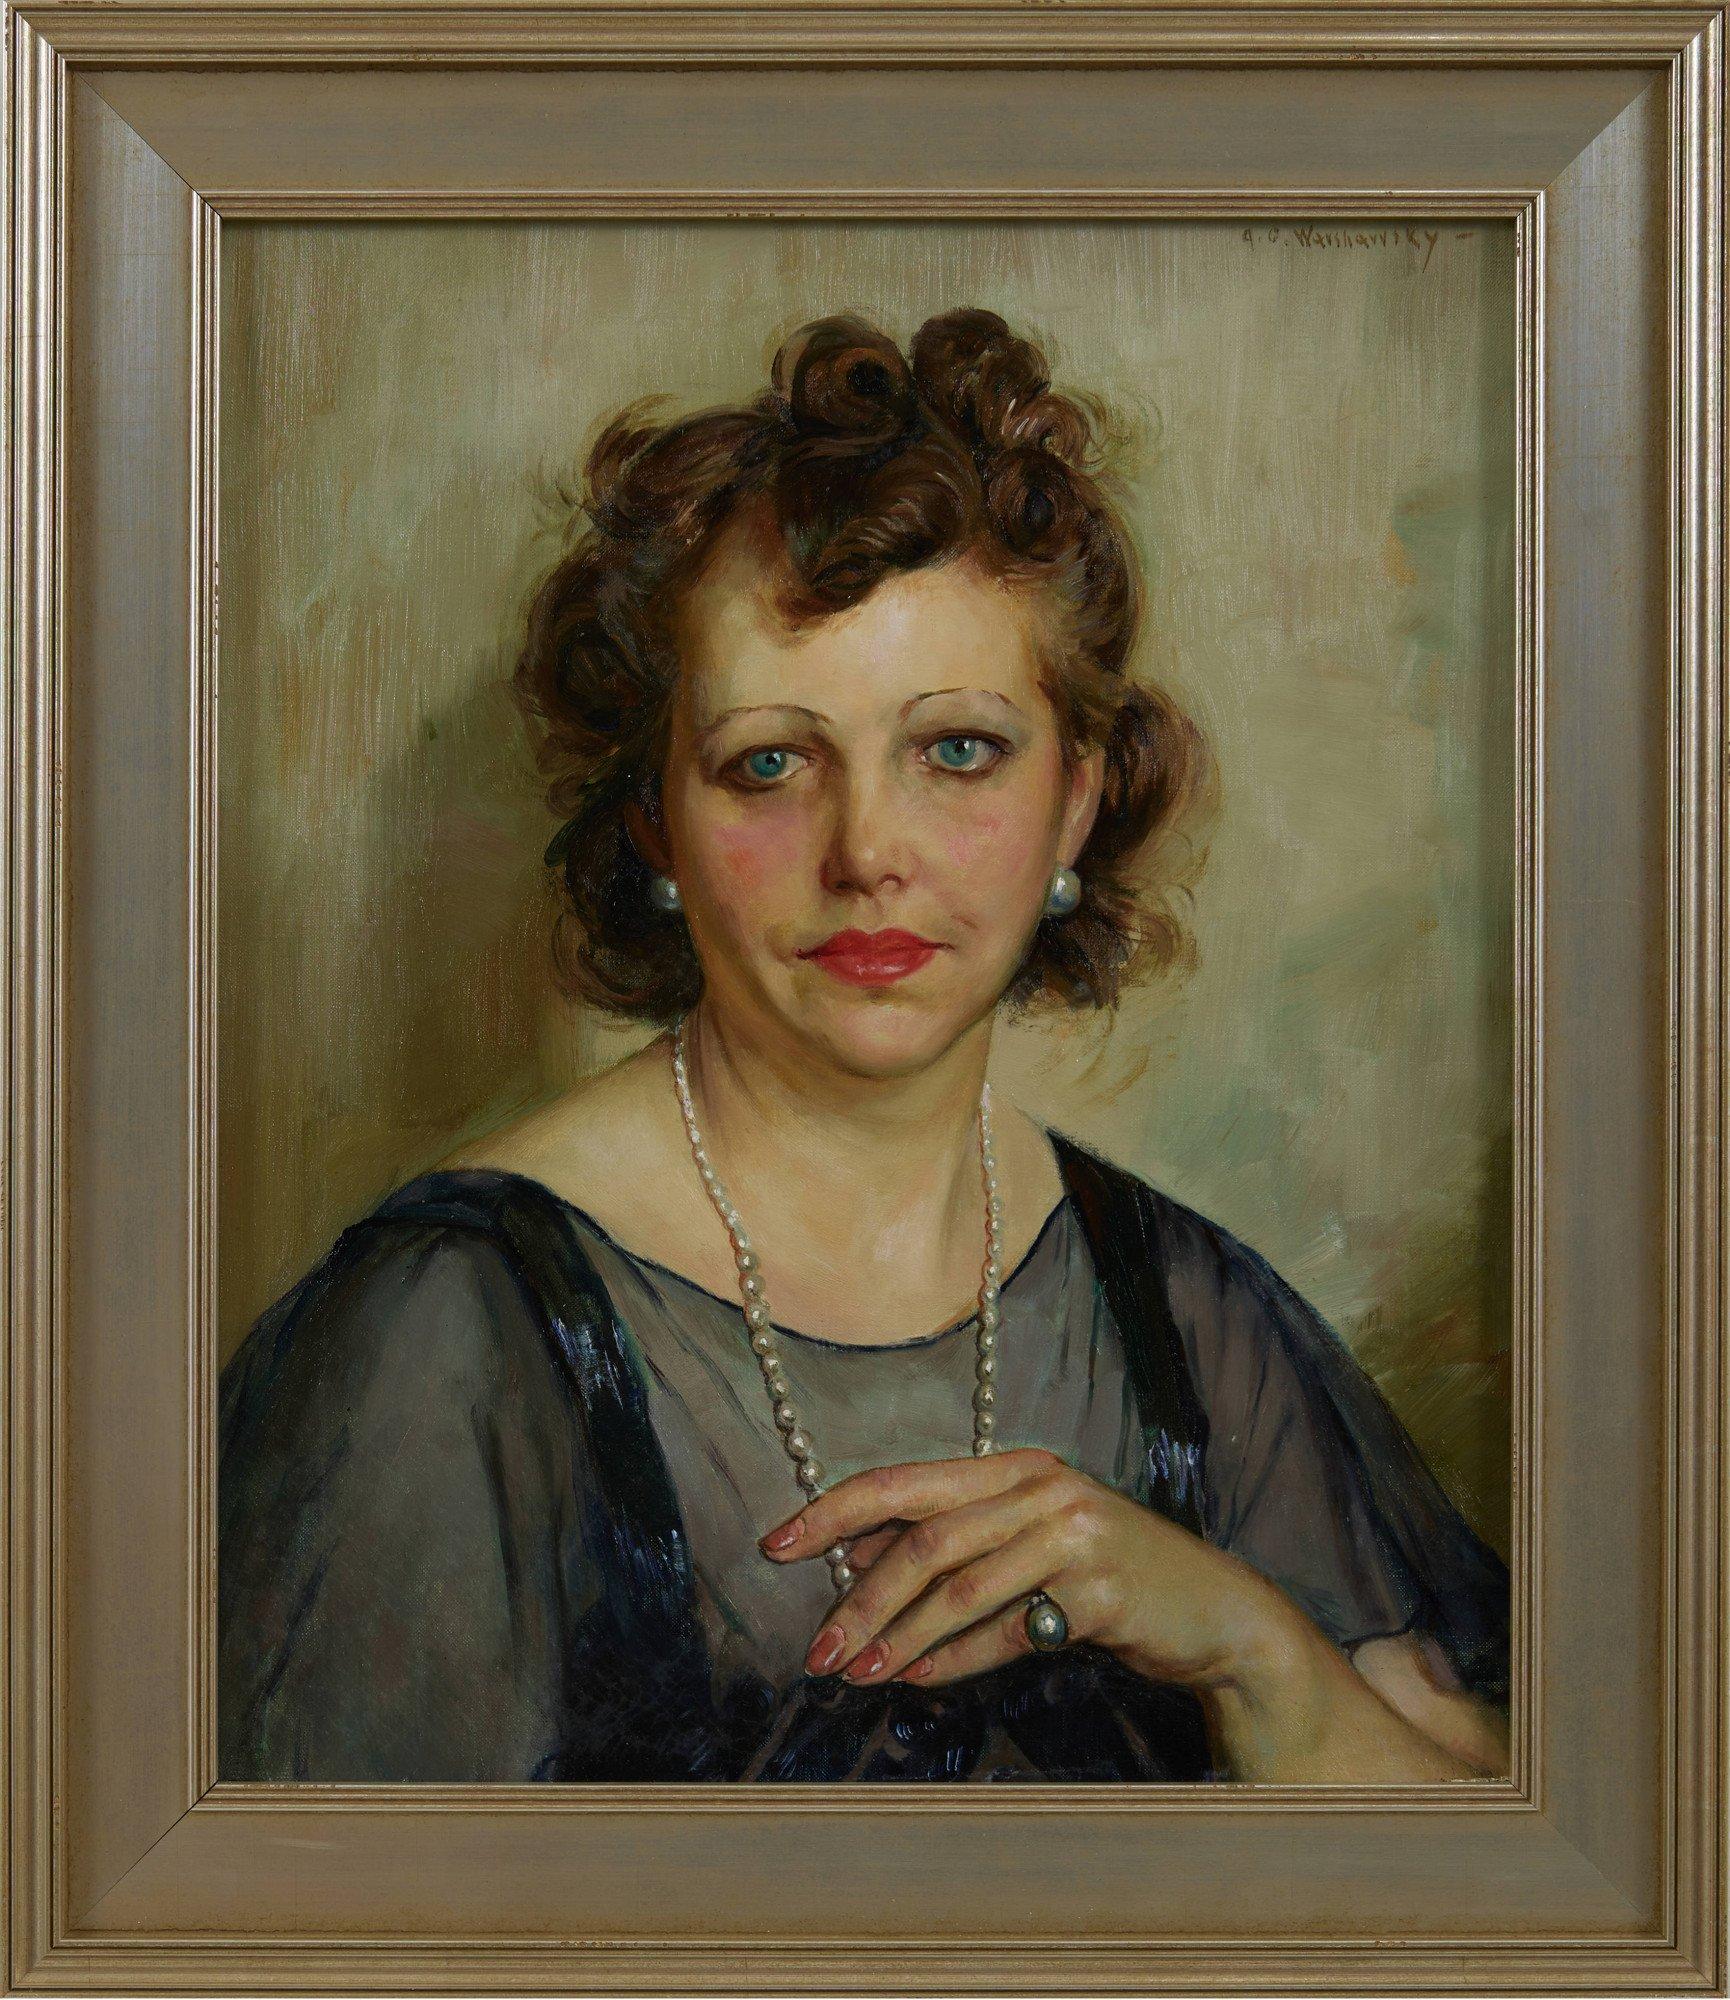 The Antique Dealer, Ölporträt einer Frau aus dem 20. Jahrhundert, Cleveland School – Painting von Abel Warshawsky